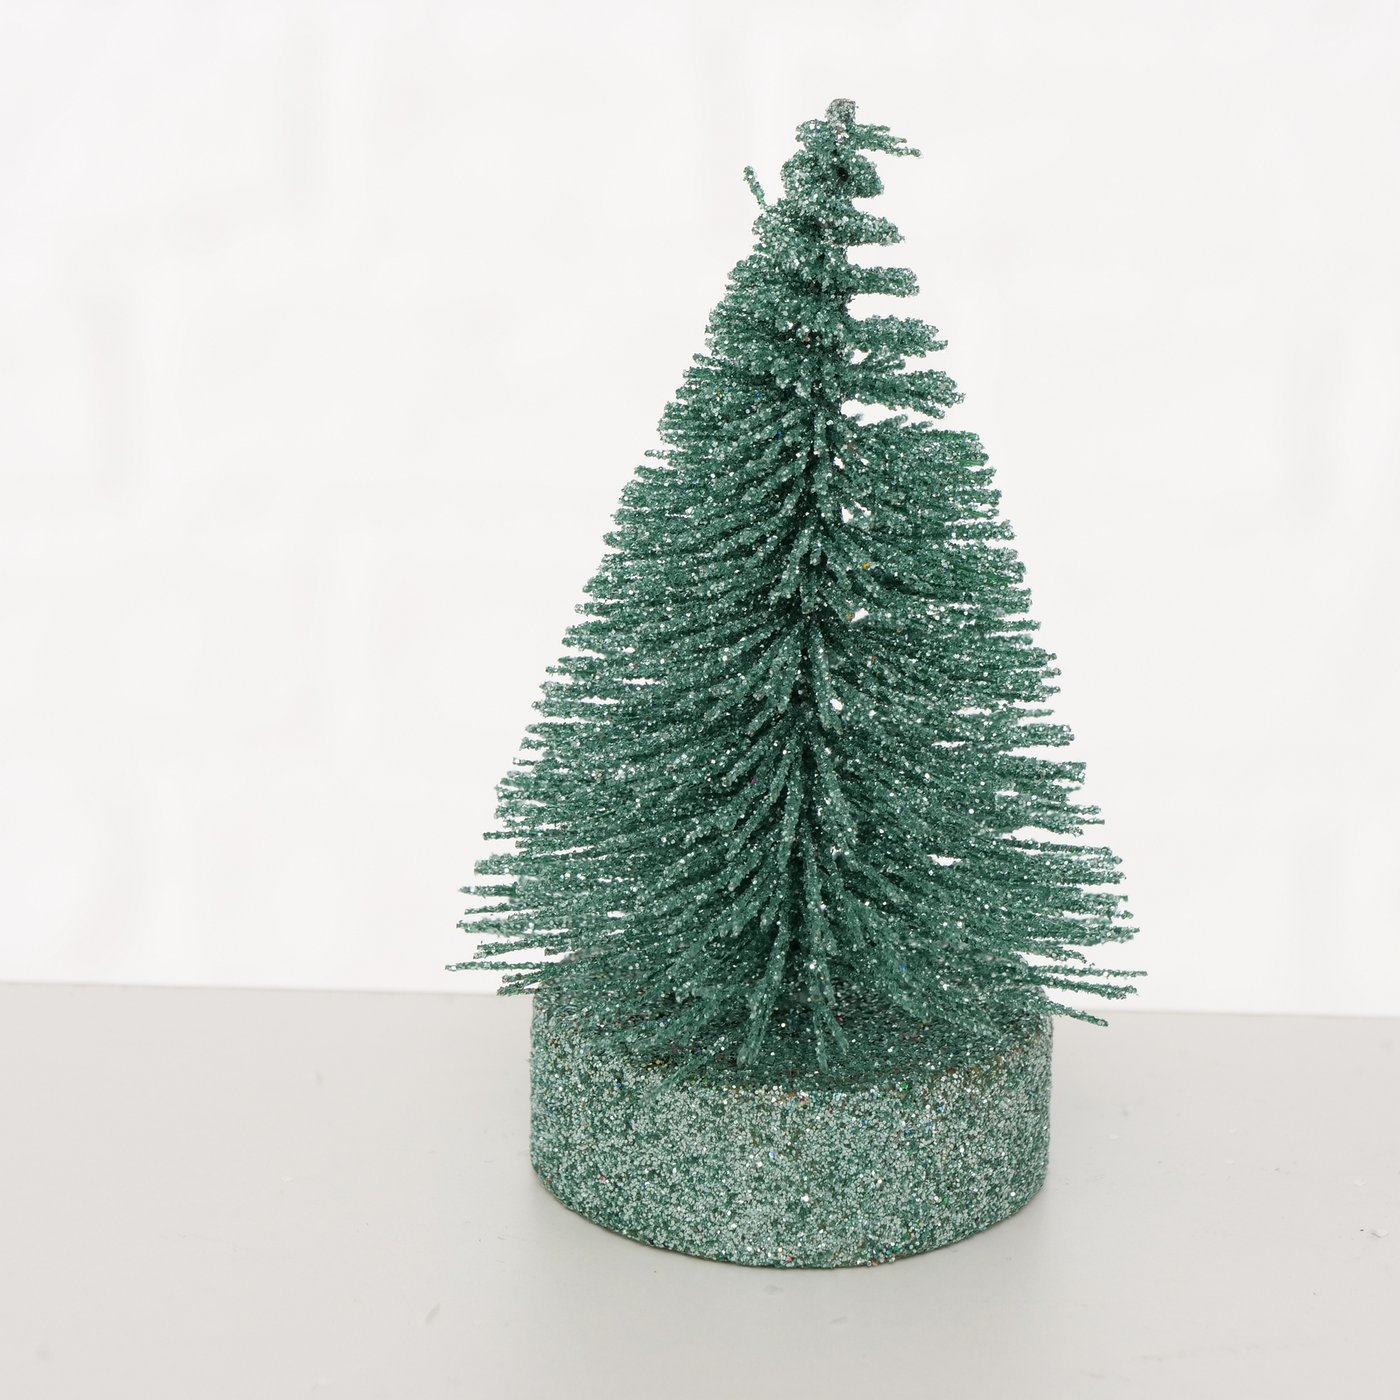 Deko Aufsteller mini Weihnachtsbaum "Borsty" grün Glitzer, 2024760, 4066076071753, Boltze Xmas online kaufen